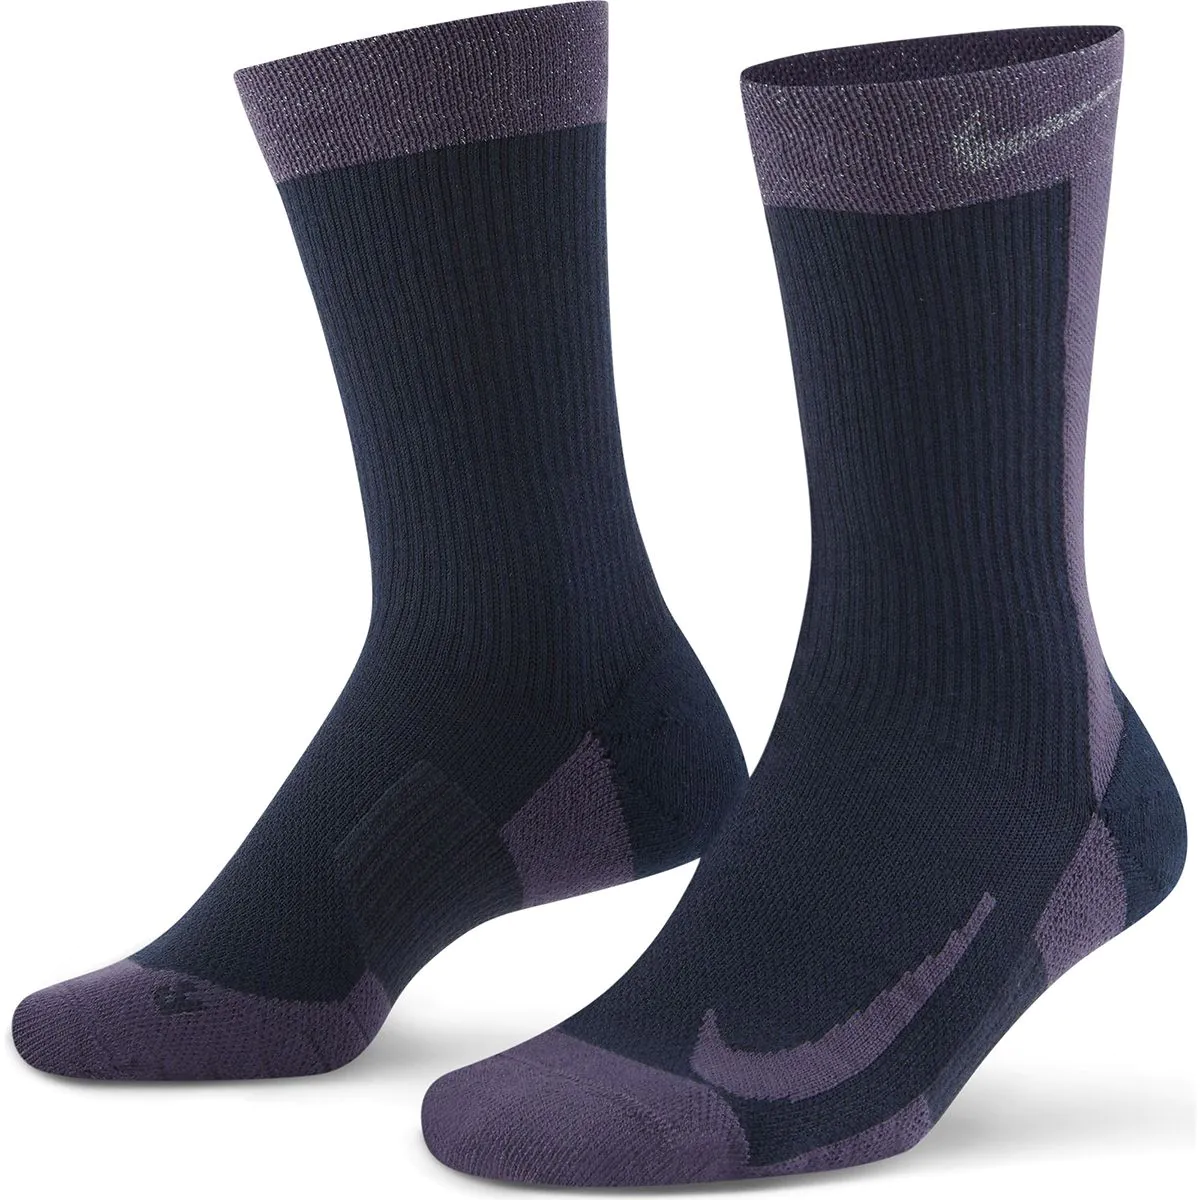 nikecourt multiplier max socks